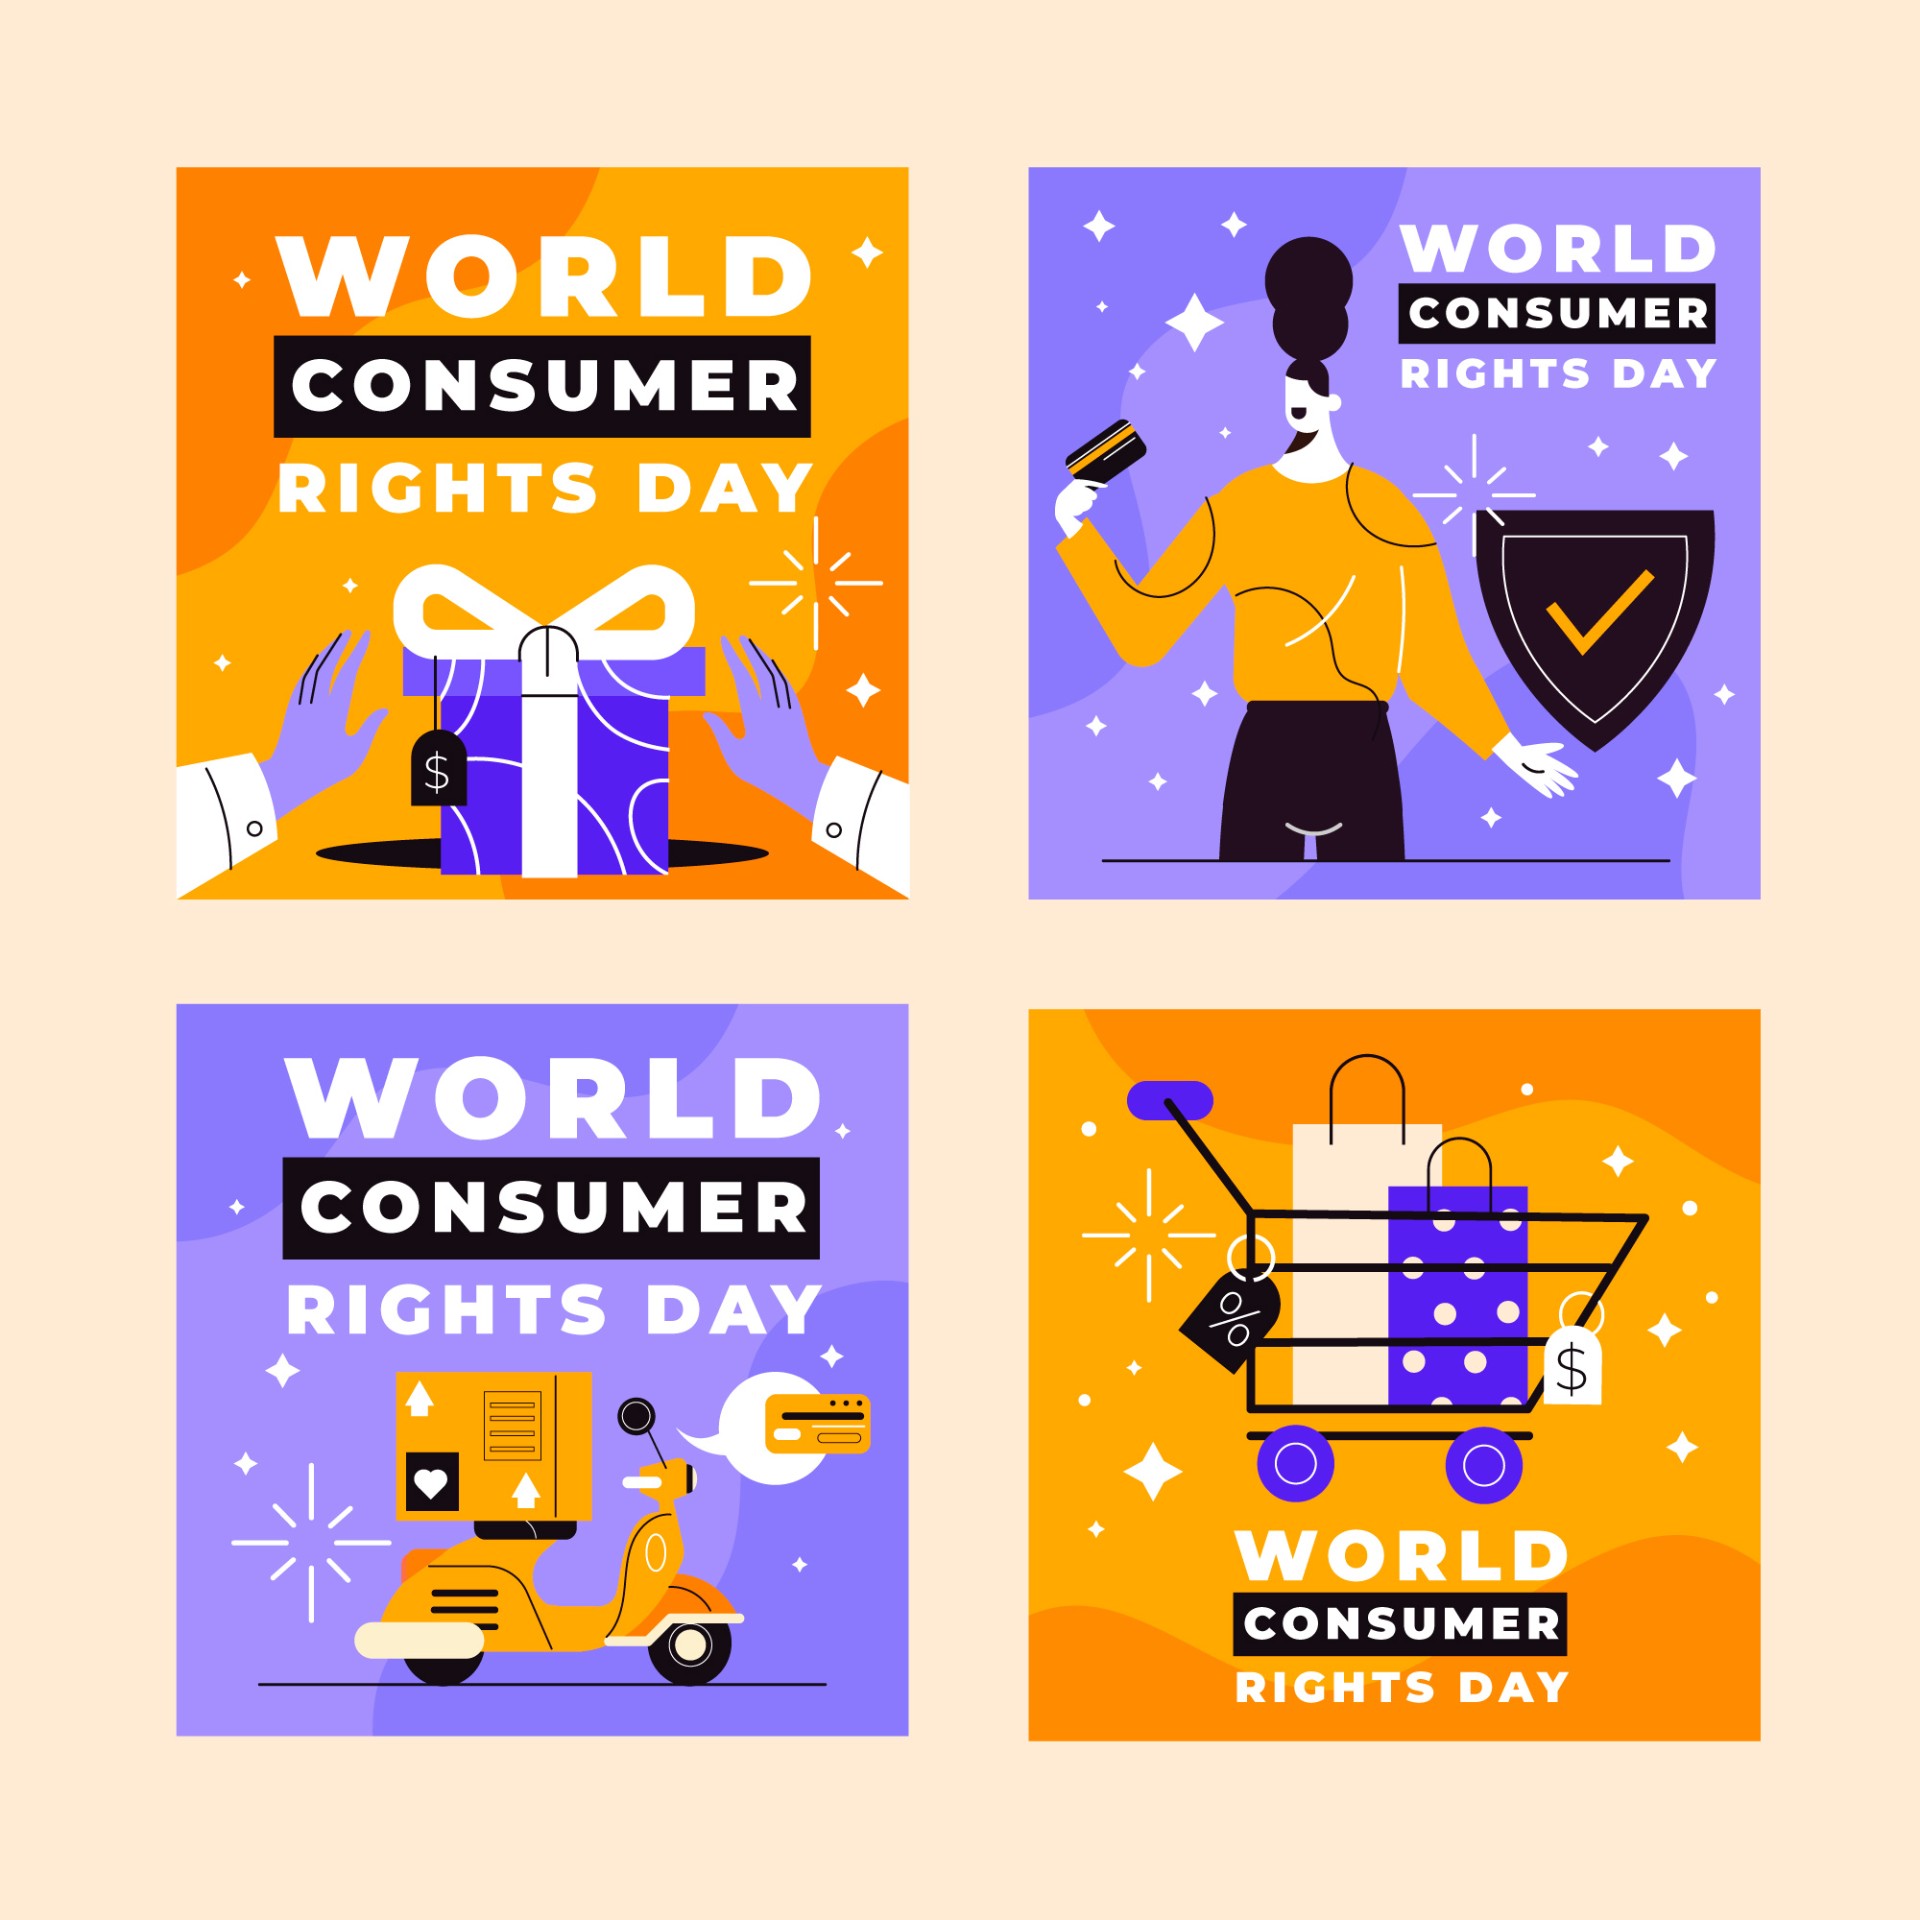 世界消费者权益日帖子模板0